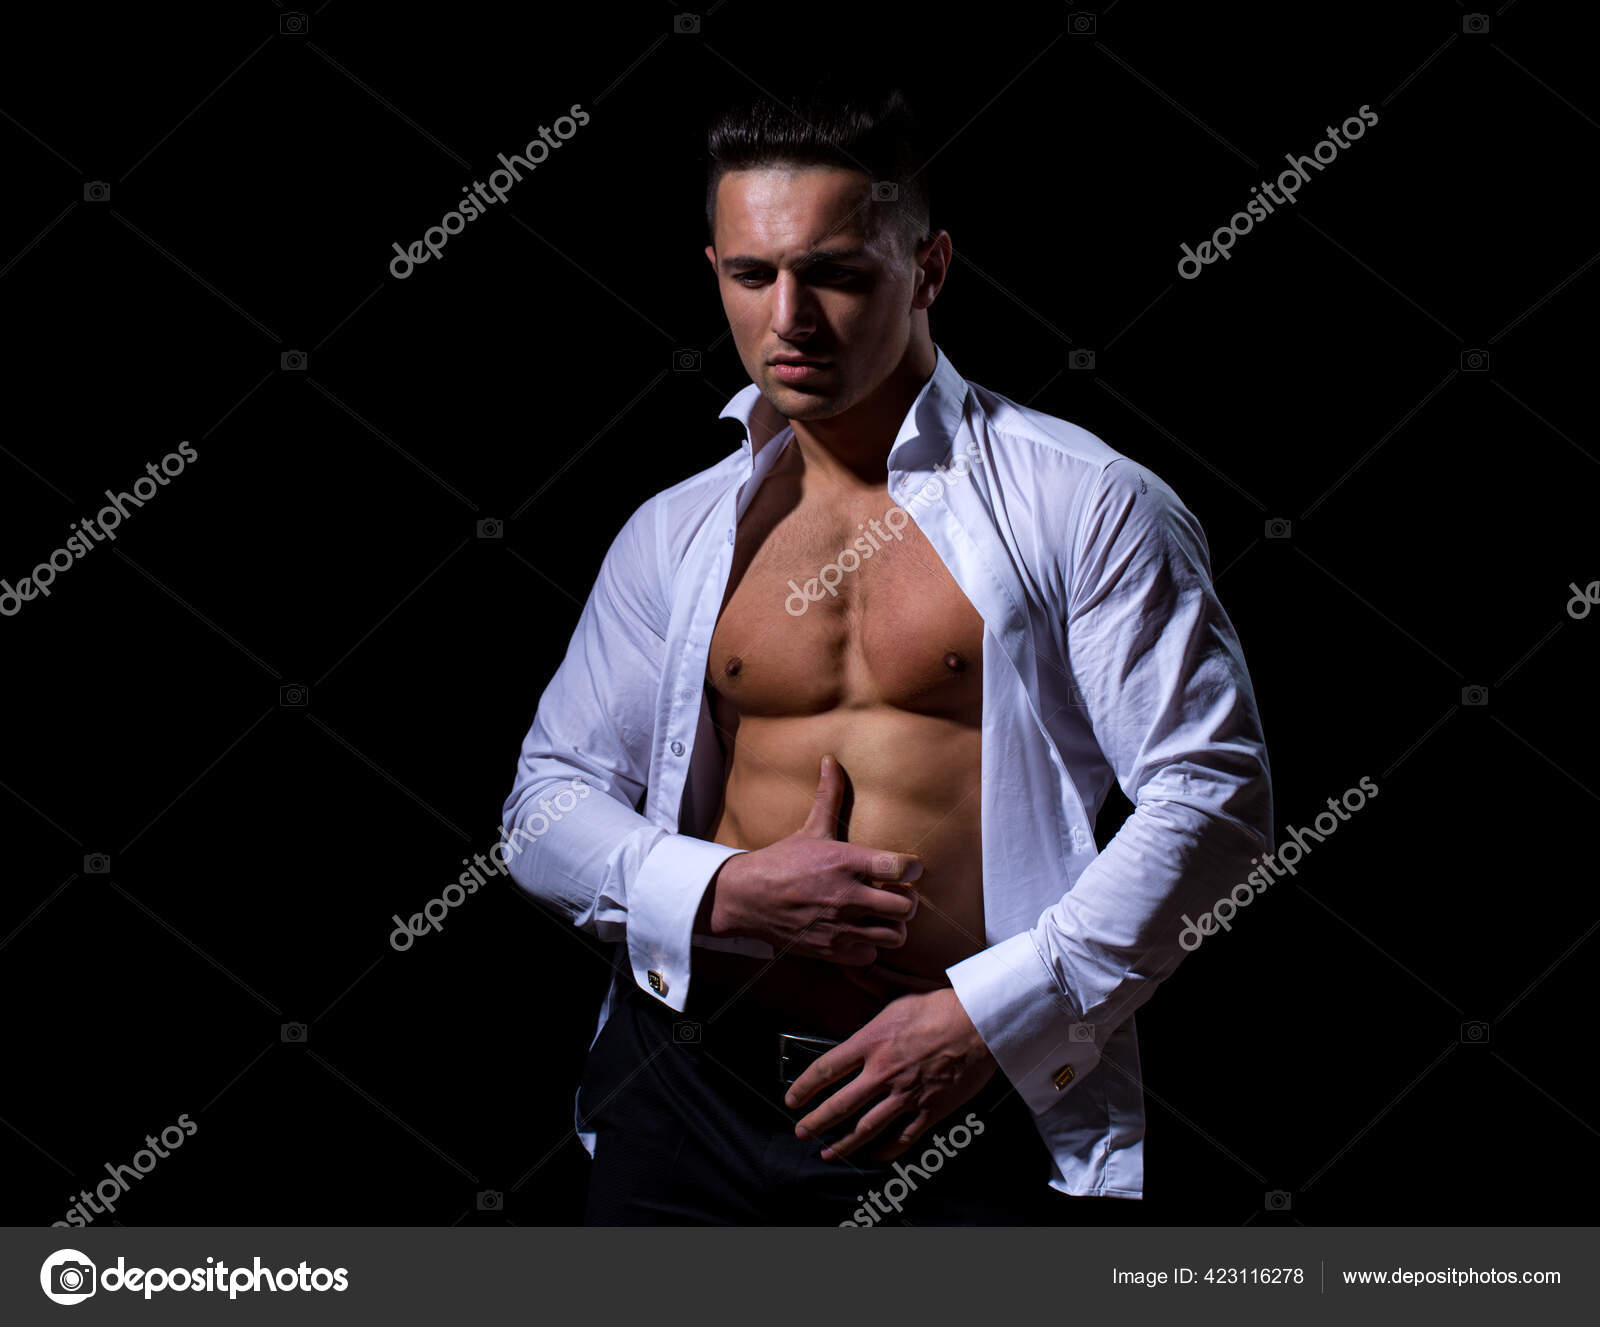 ボタンを外したシャツを着たセクシーな男。セクシーな裸の胴体を示す筋肉の上半身裸の男性モデル。メトロセクシャルの男は裸。上半身裸のアスレチックホット裸の男。 | プレミアム写真